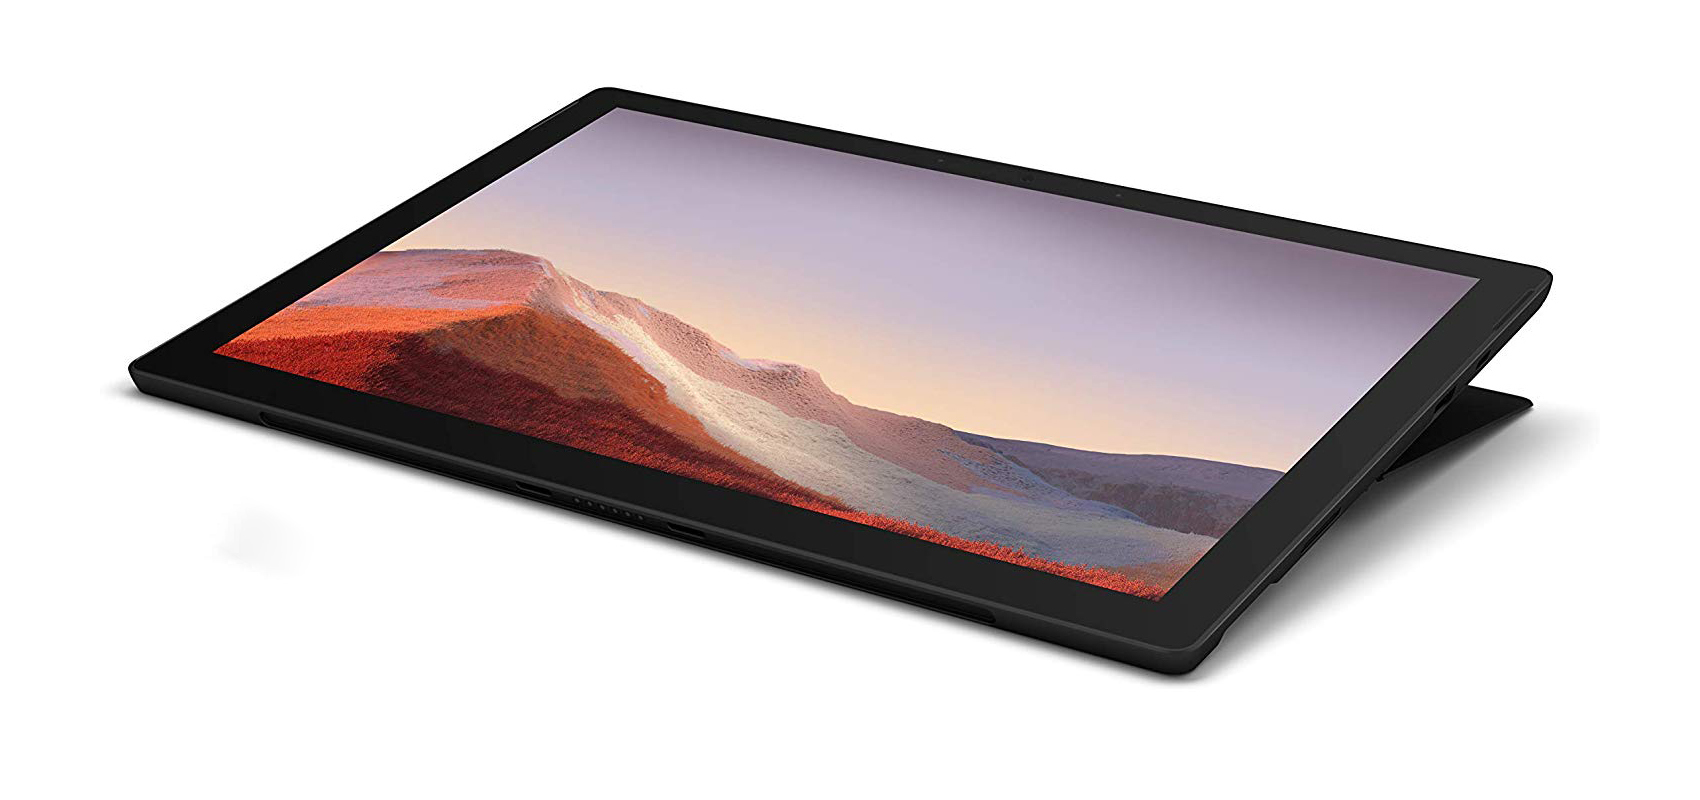 جهاز Microsoft Surface Pro 7 بالمعالج i7-1065G7/ ذاكرة الوصول العشوائي 16 جيجابايت/محرك أقراص صلبة من النوع SSD سعة 512 جيجابايت/أسود + غطاء أسود